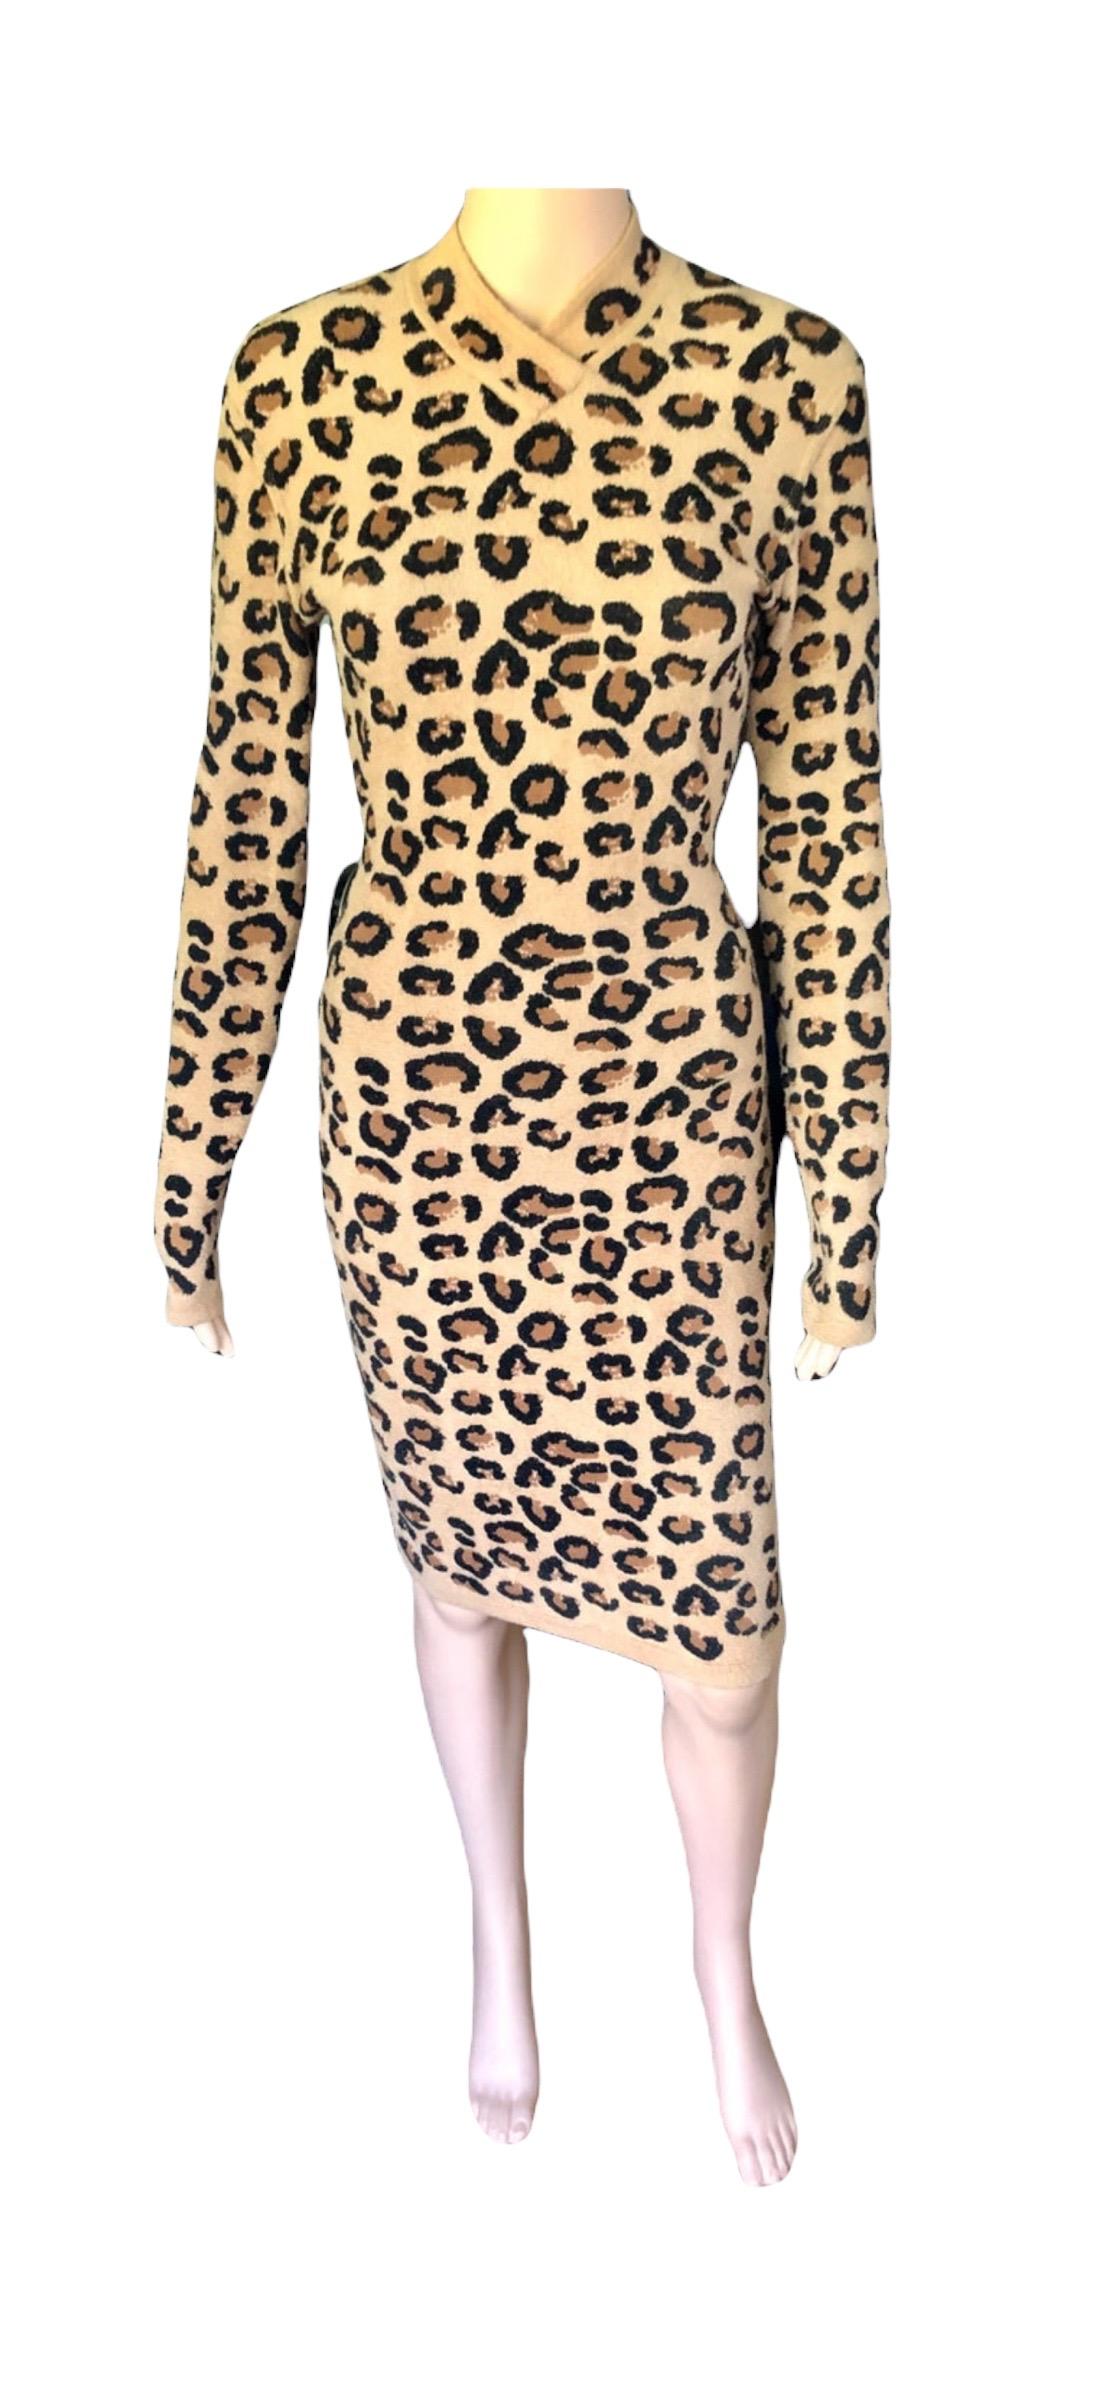 Azzedine Alaia F/W 1991 Runway Vintage Iconic Leopard Print Bodycon Dress For Sale 1